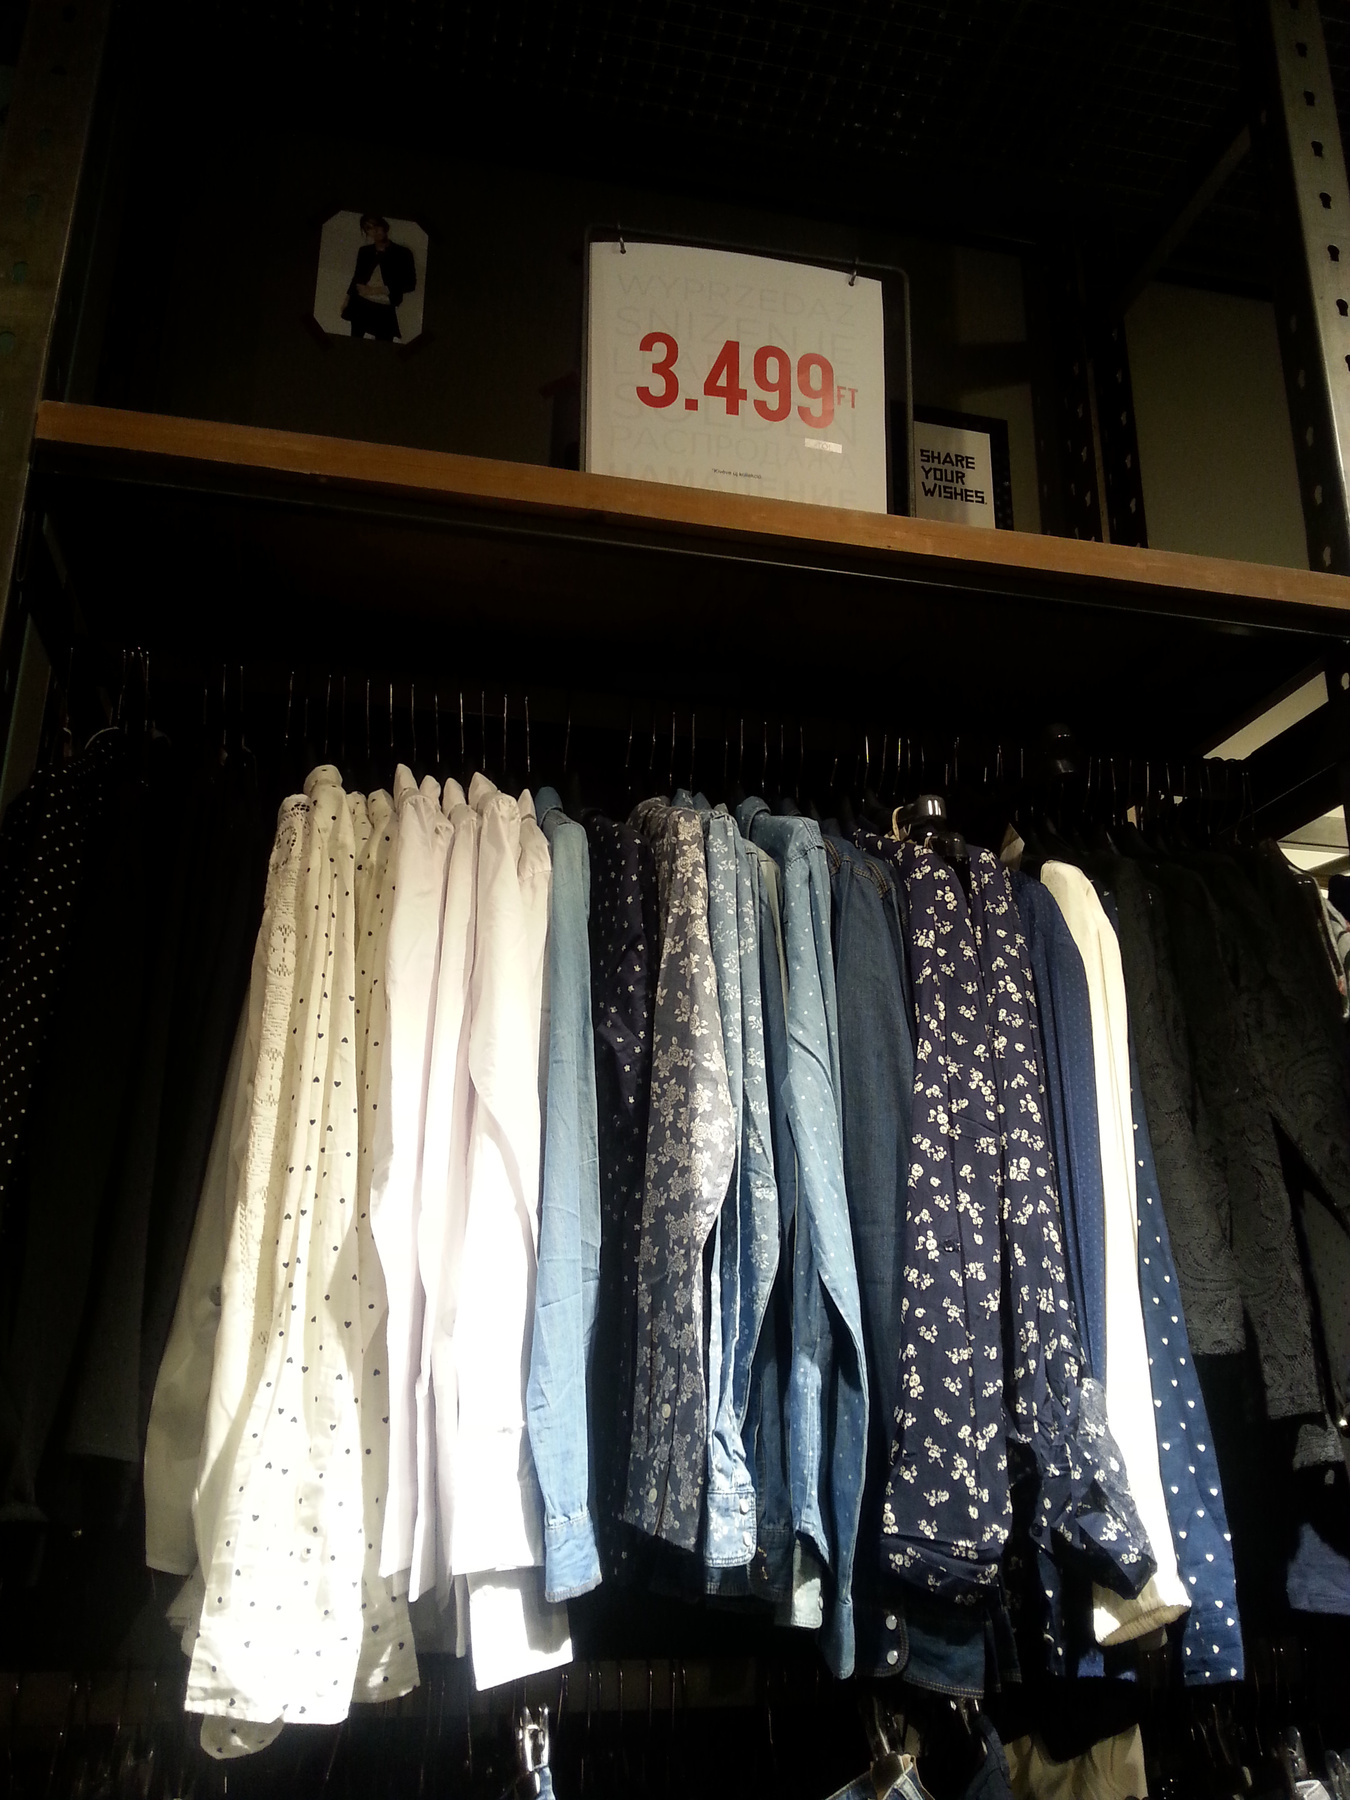 Camaieu: és a kedvenc bőrkabátaink, még mindig 12795 forintba kerülnek.